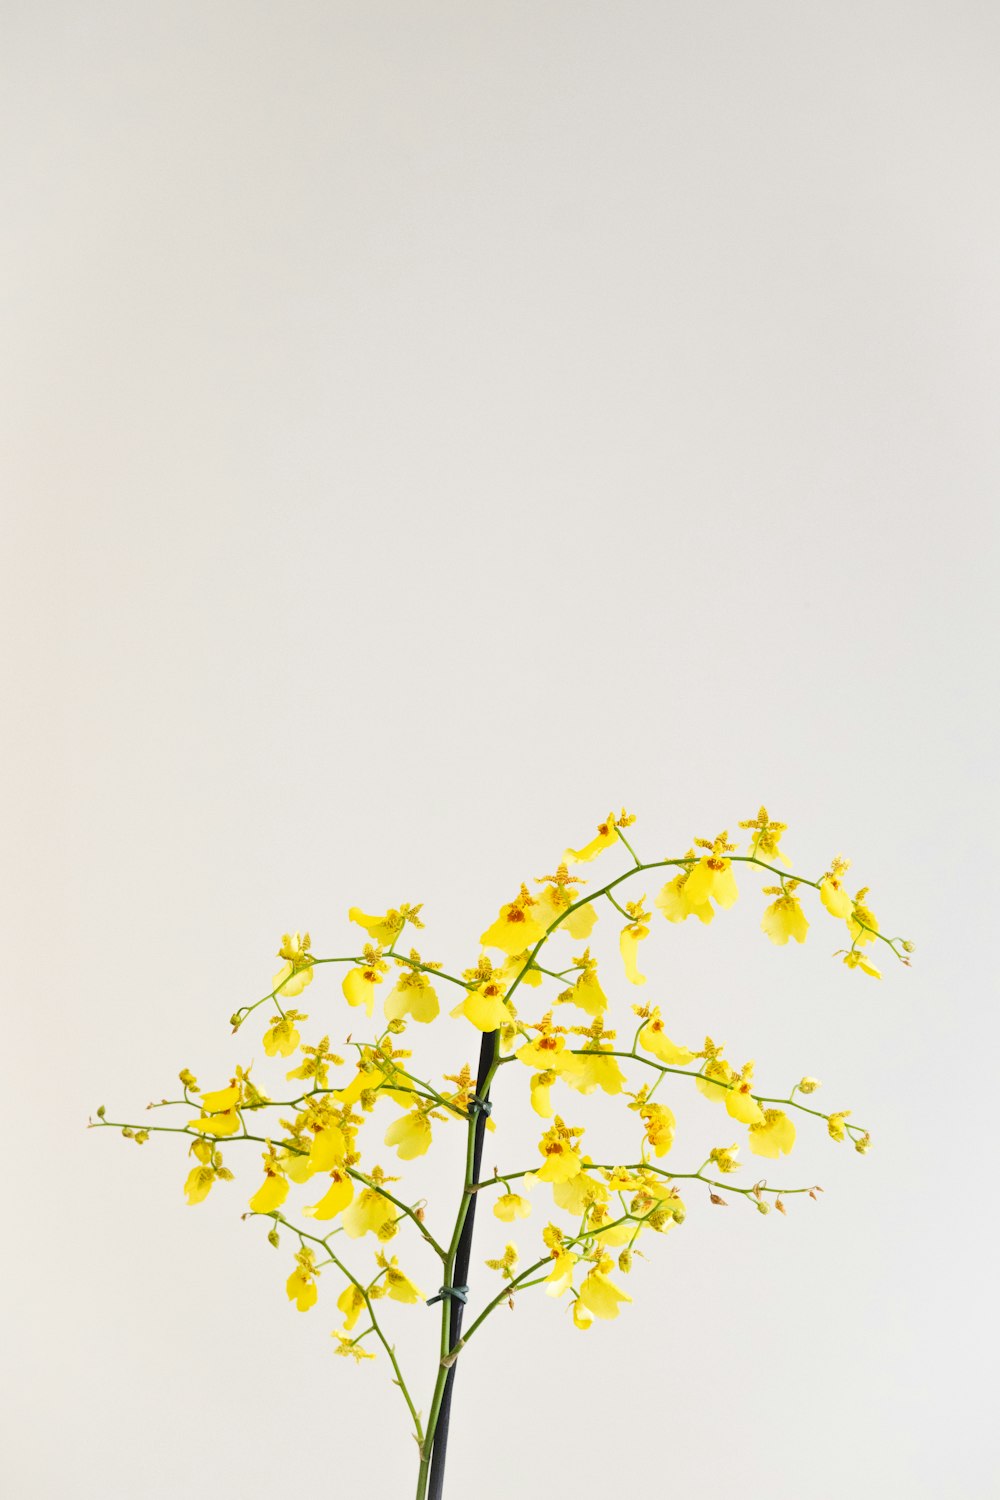 テーブルの上には黄色い花が咲き乱れた花瓶